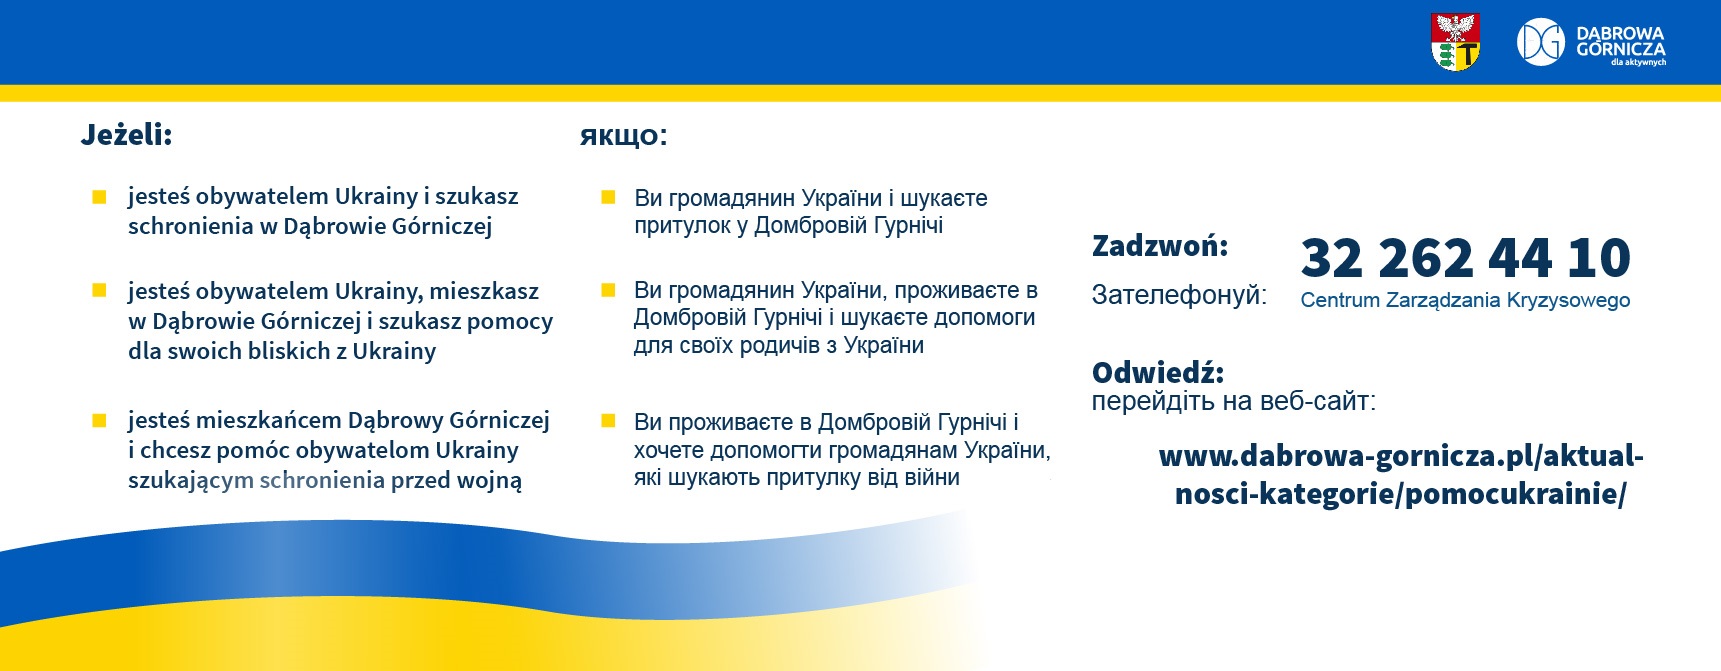 zdjecie ilustrujące możliwość uzyskania pomocy przez obywateli Ukrainy